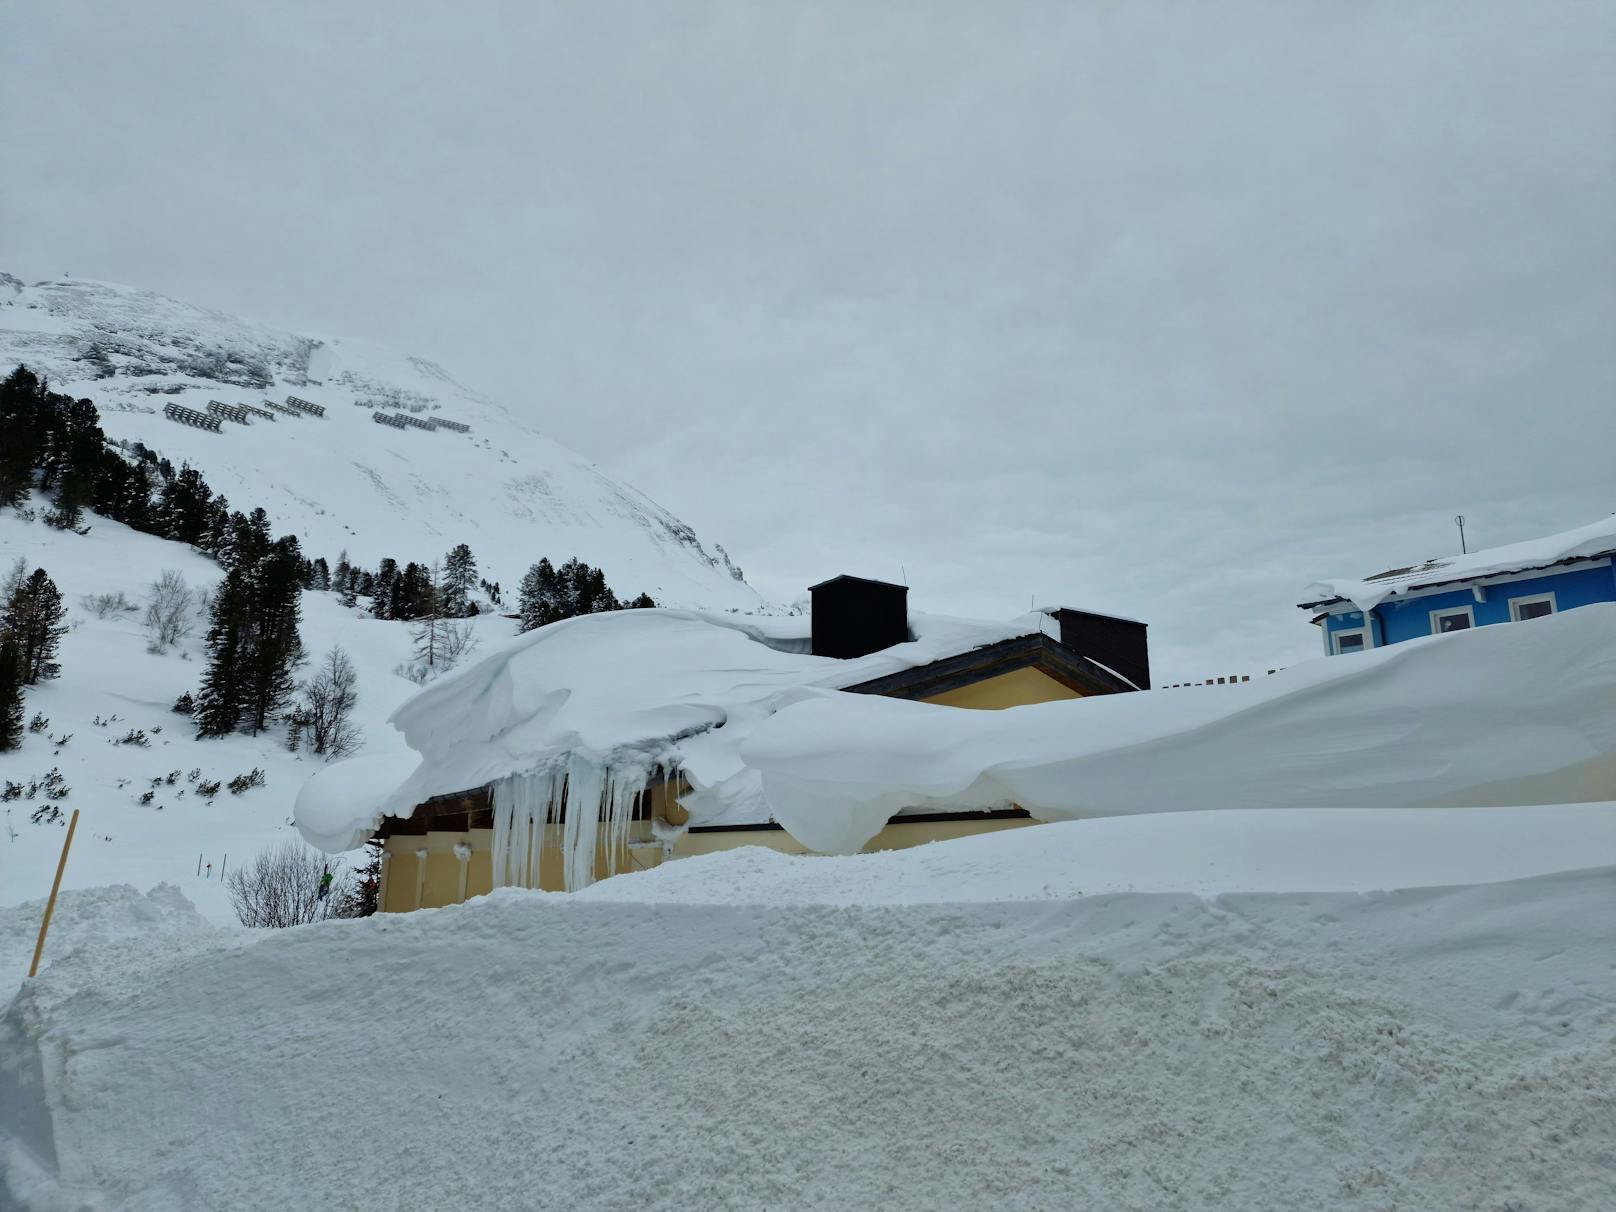 Die Schnee-Walze gepaart mit dem Orkan-Sturm sorgten in Obertauern, Salzburg, am 3. Februar 2023 für massive Schneeverwehungen und laut Augenzeugen "blizzardähnliche Verhältnisse".